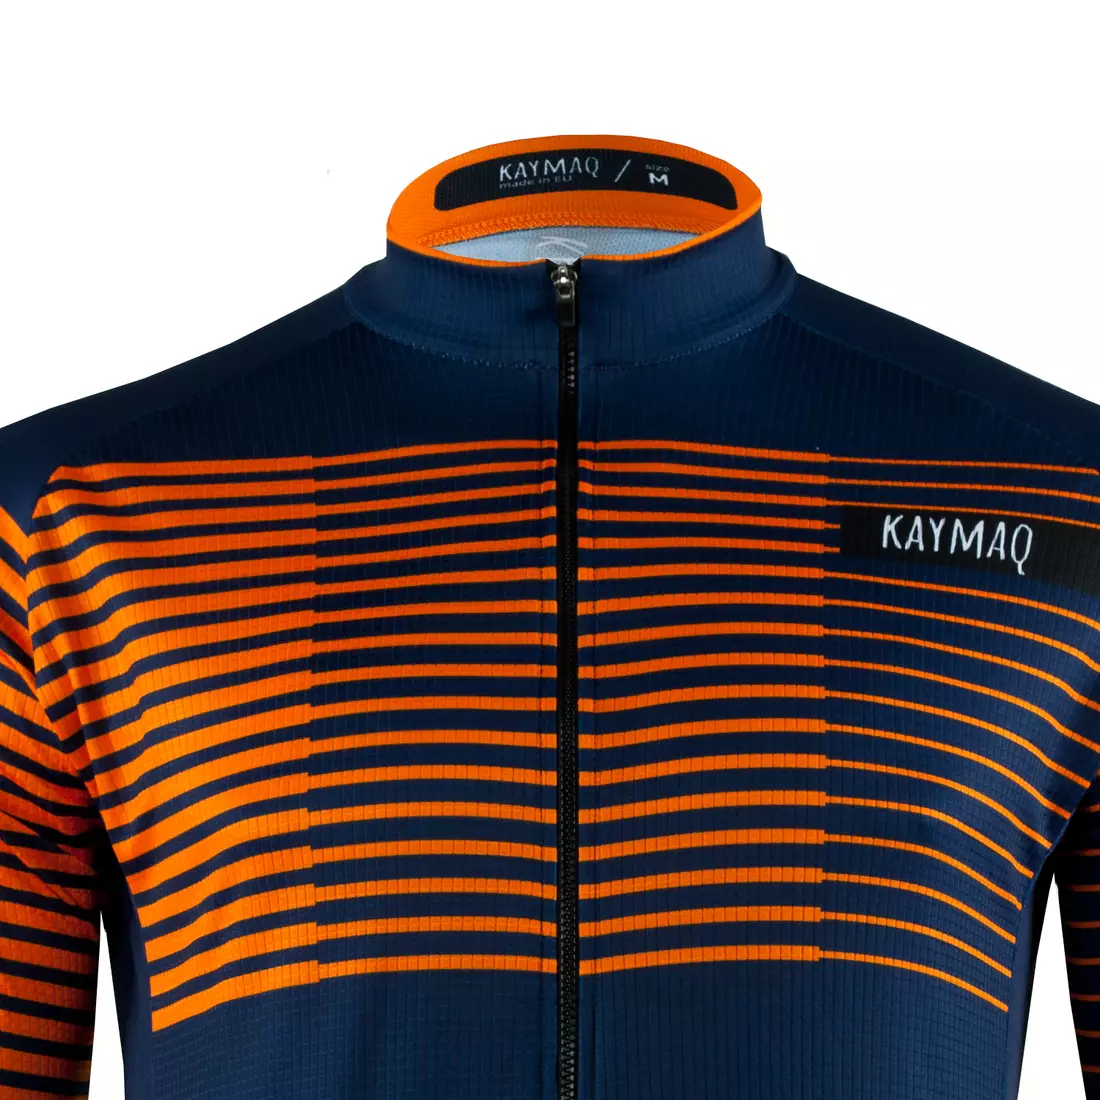 [Set] KAYMAQ DESIGN M66 férfi kerékpáros pulóver sötétkék + KAYMAQ M66 RACE férfi rövid ujjú kerékpáros mez narancs